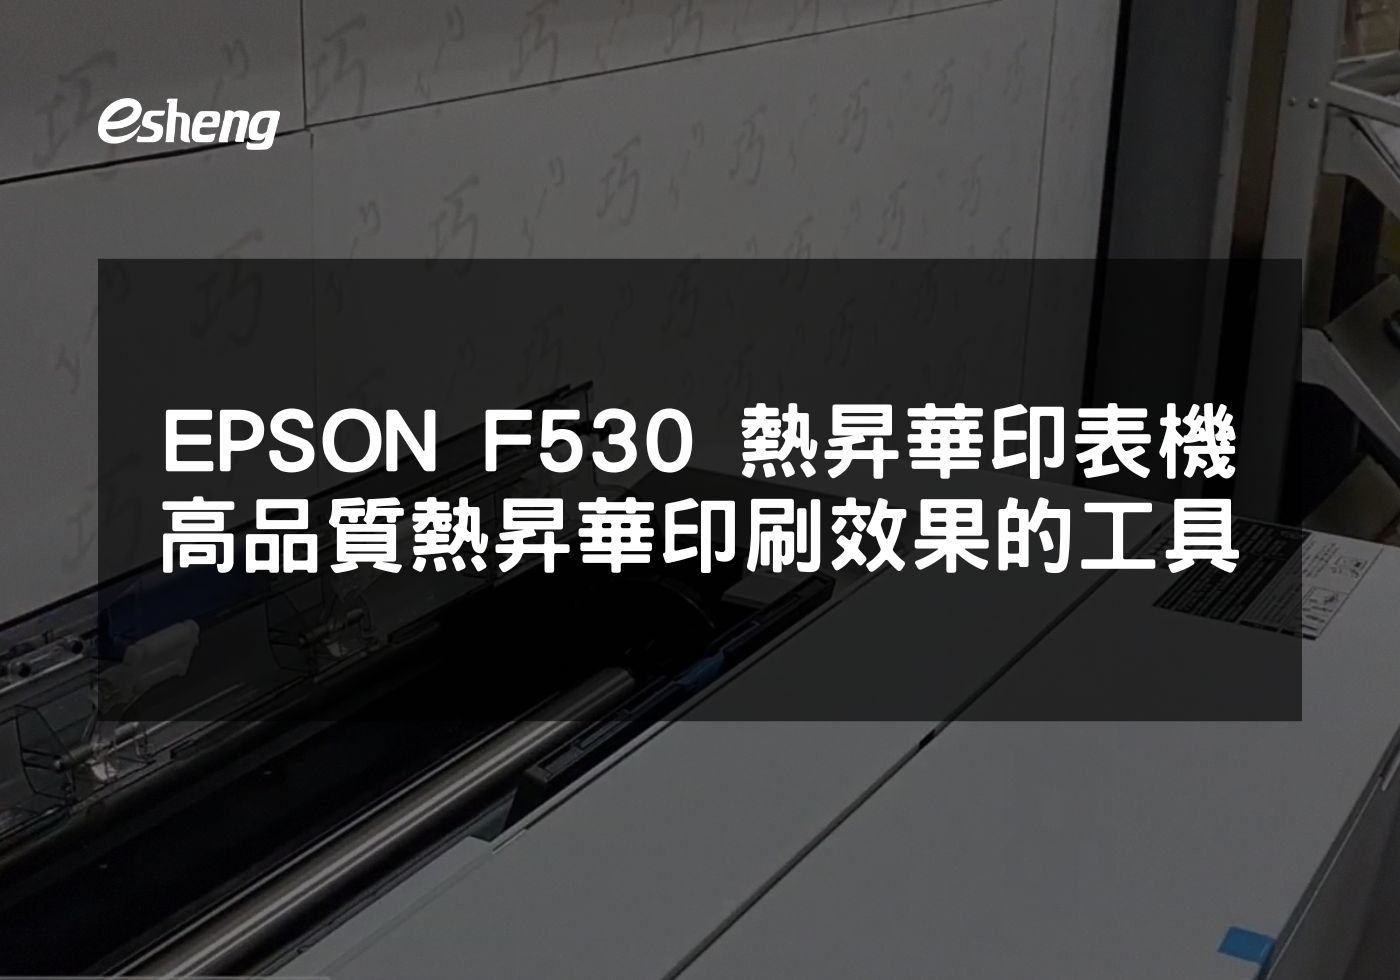 您目前正在查看 EPSON F530 熱昇華印表機 打造高品質熱昇華印刷效果的專業工具